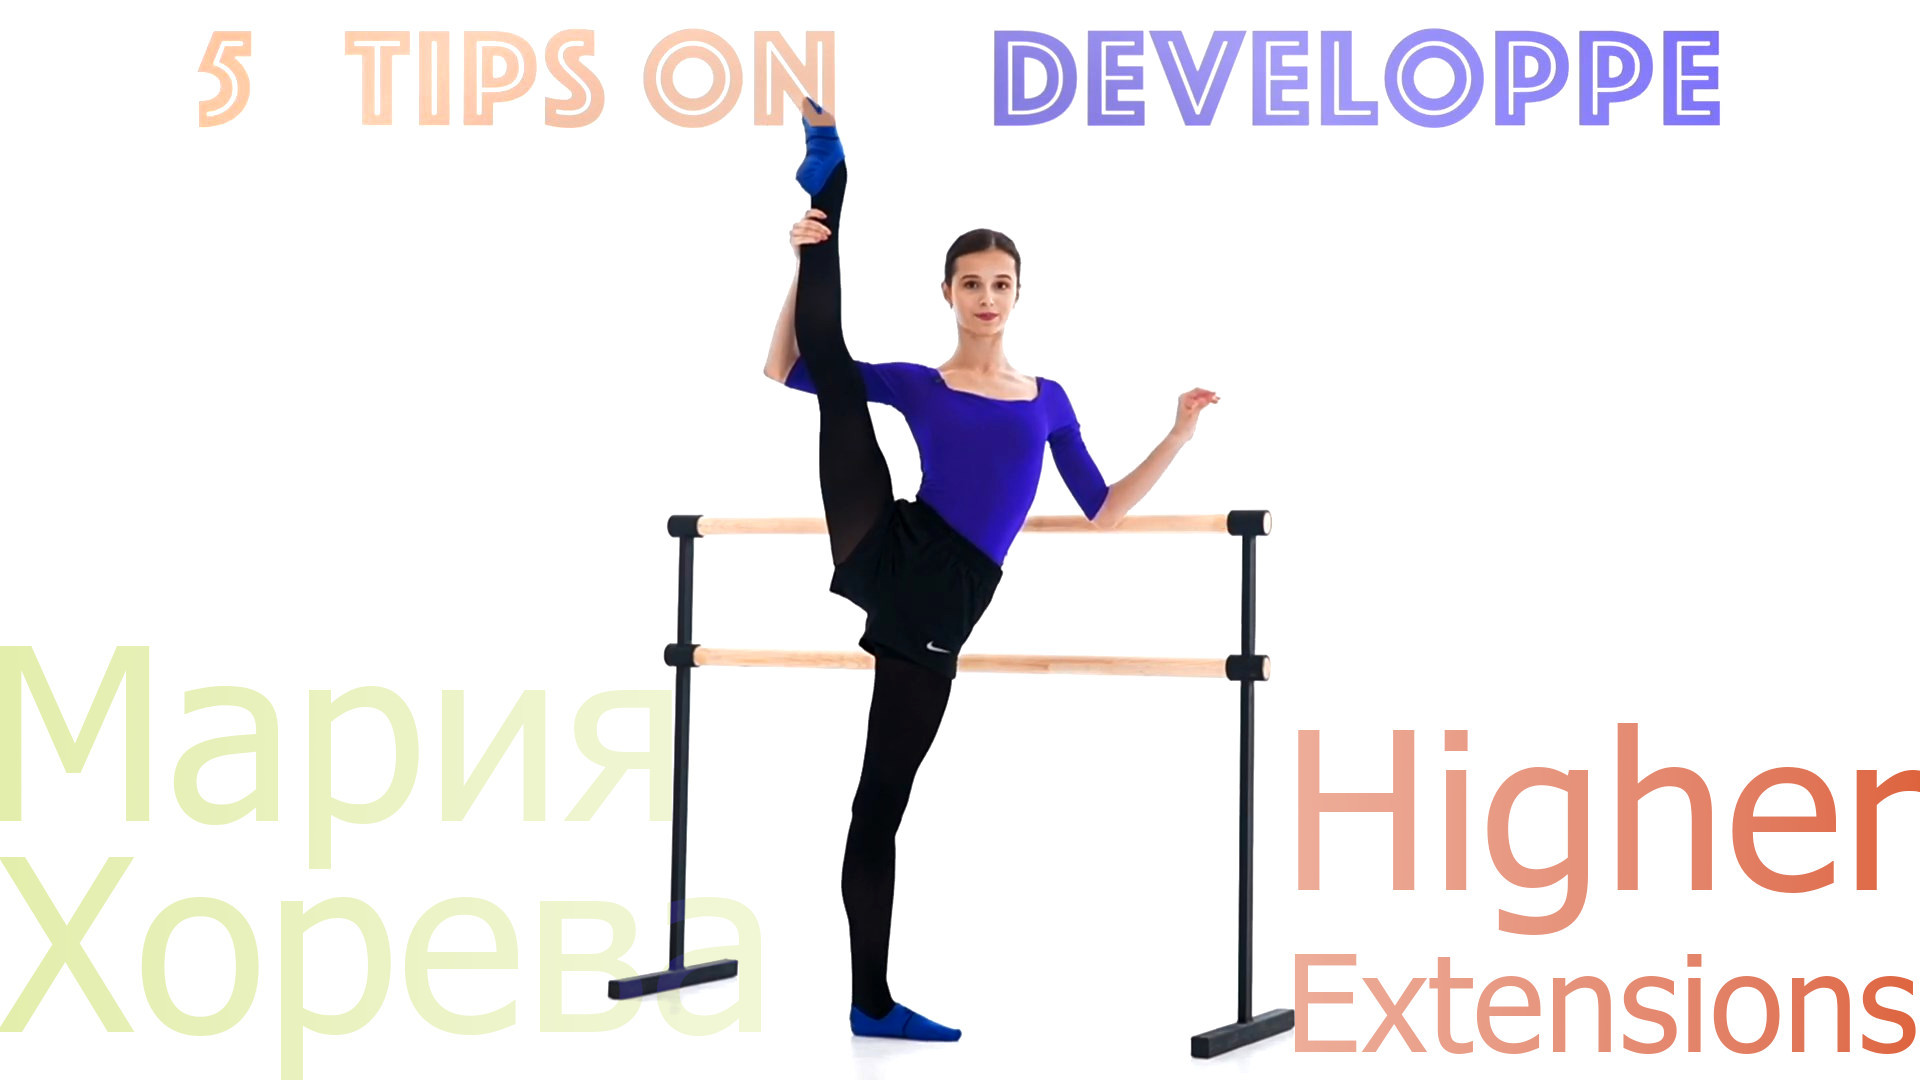 Maria Khoreva - 5 Tips on Higher Extensions (Developpe)